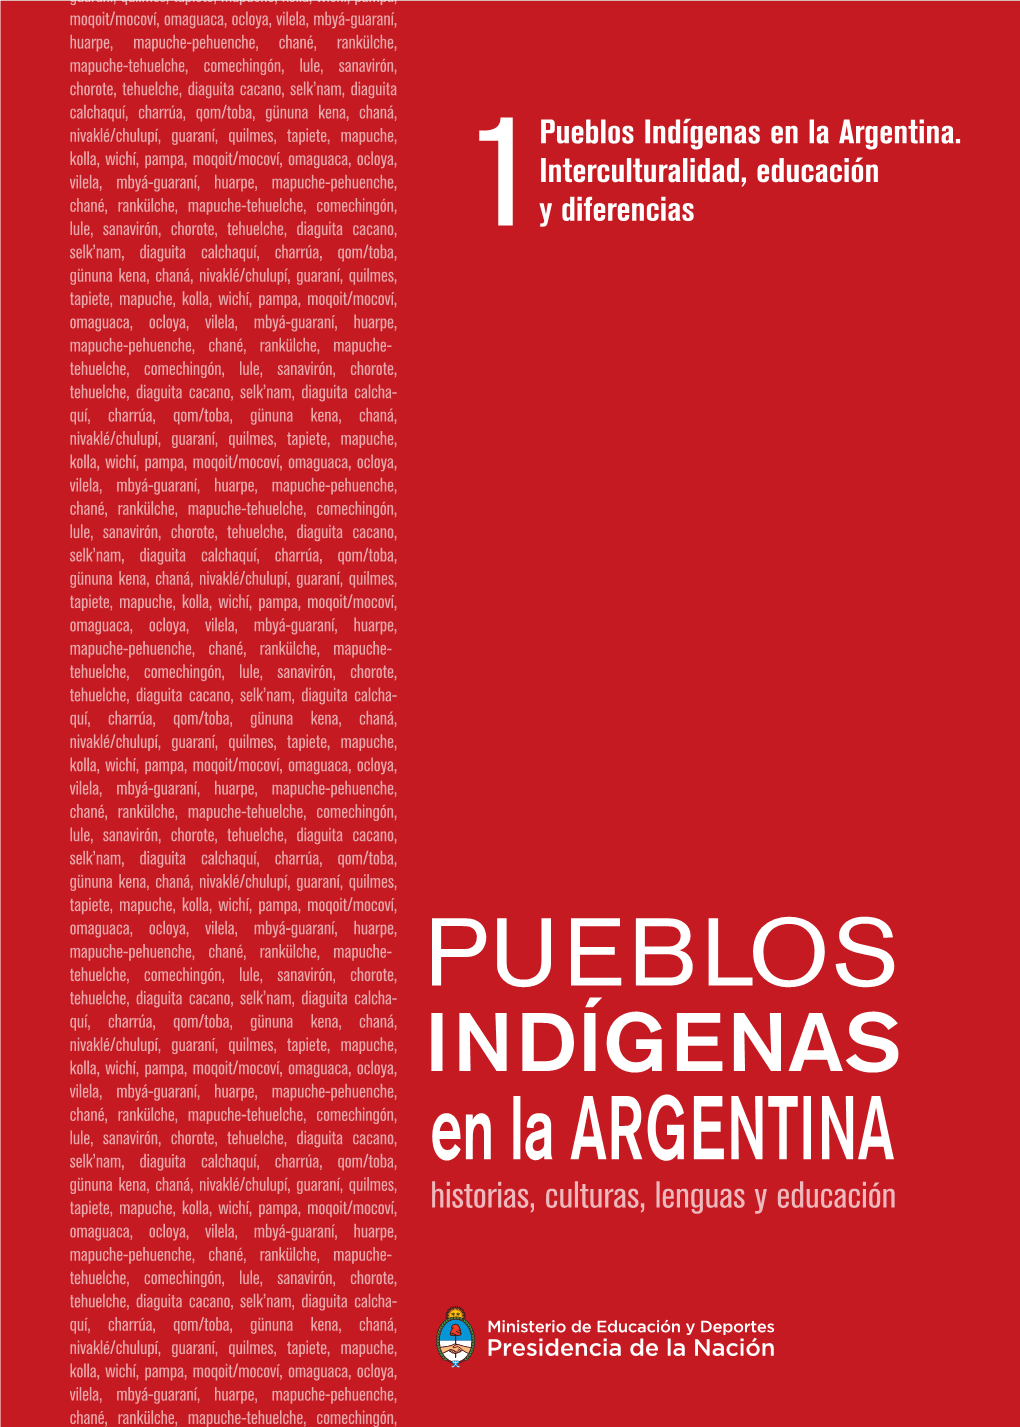 Pueblos Indígenas En La Argentina. Interculturalidad, Educación Y